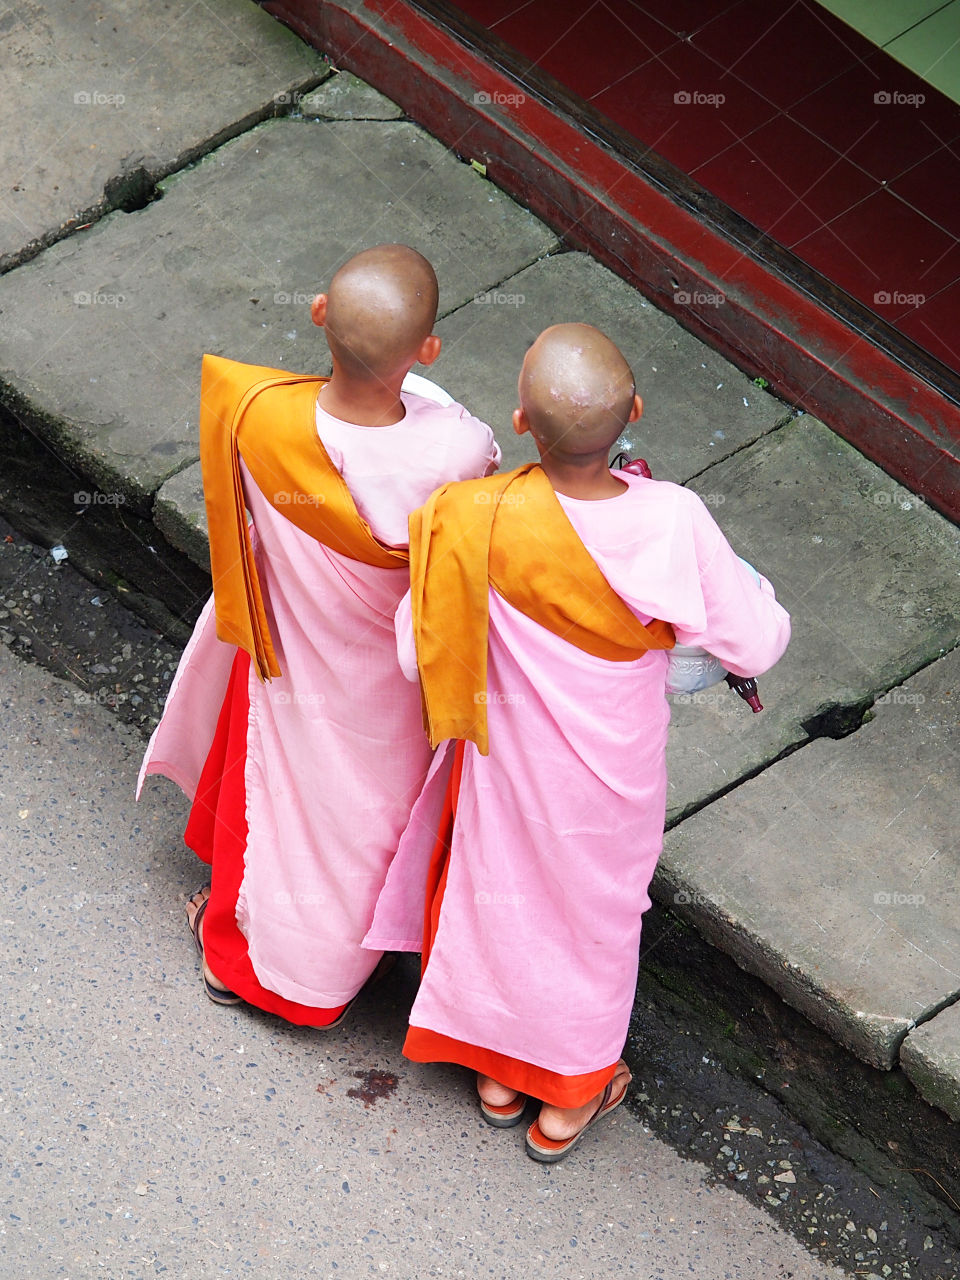 Burmese nuns in pink sarong